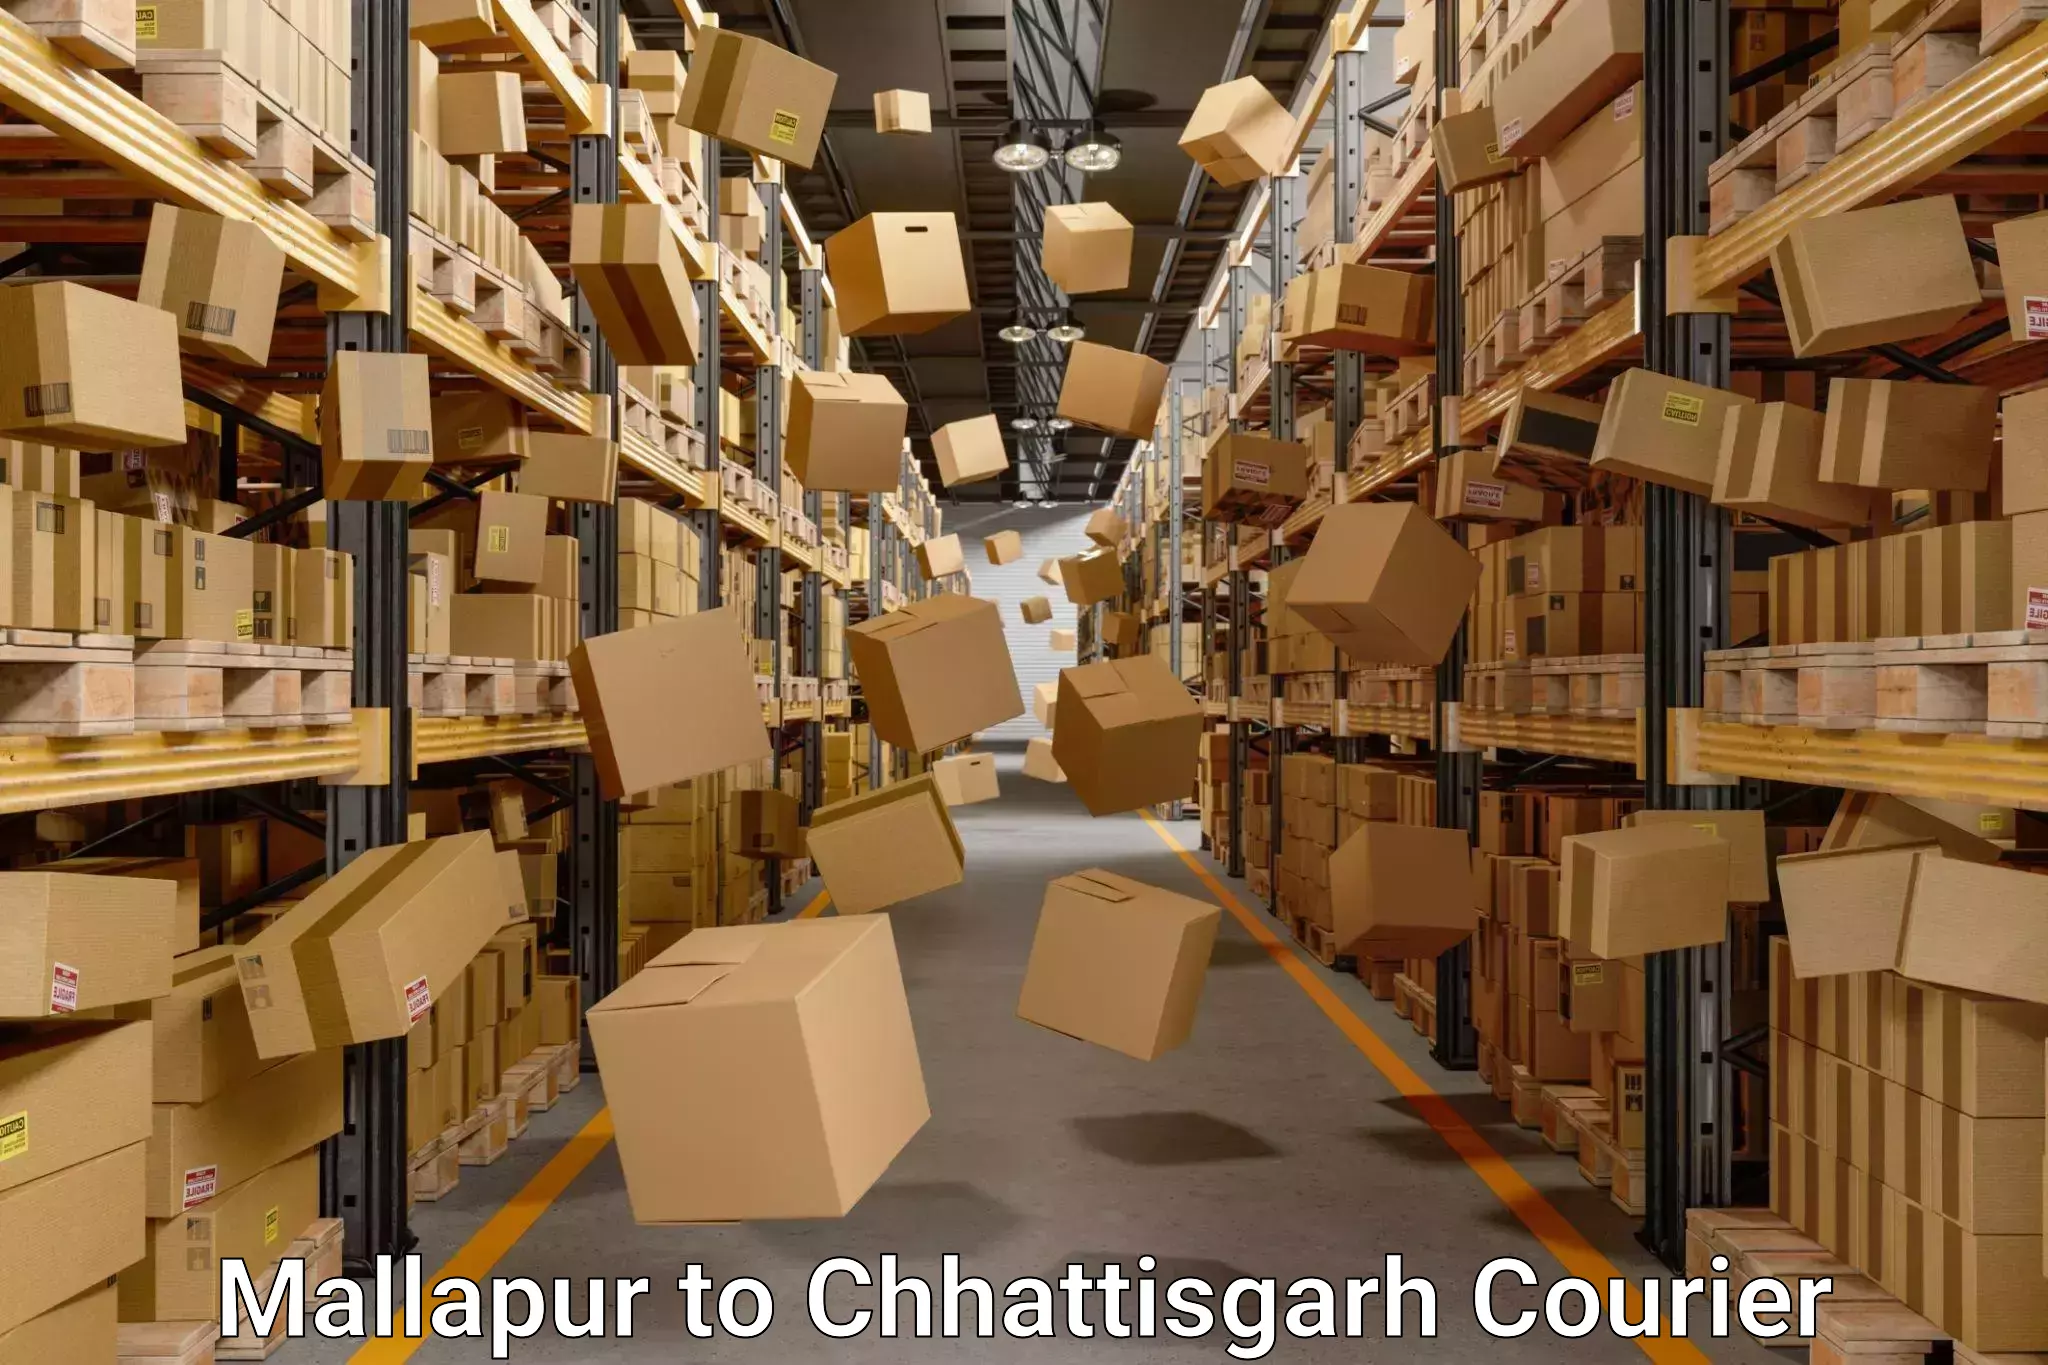 Local home movers Mallapur to Chhattisgarh